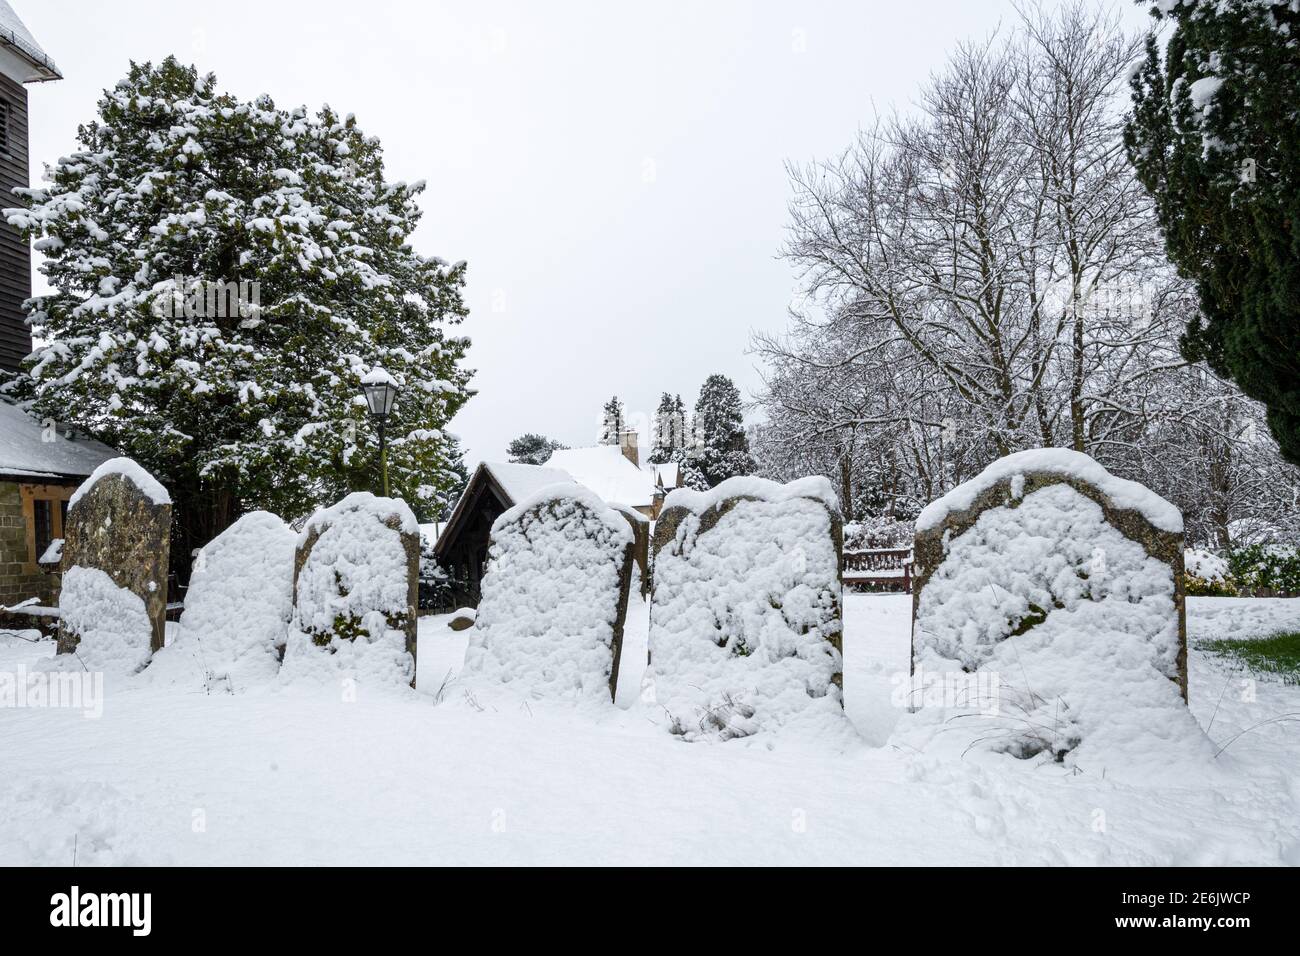 Lapidi in un cortile coperto di neve durante l'inverno, Regno Unito. Scena wintry. Foto Stock